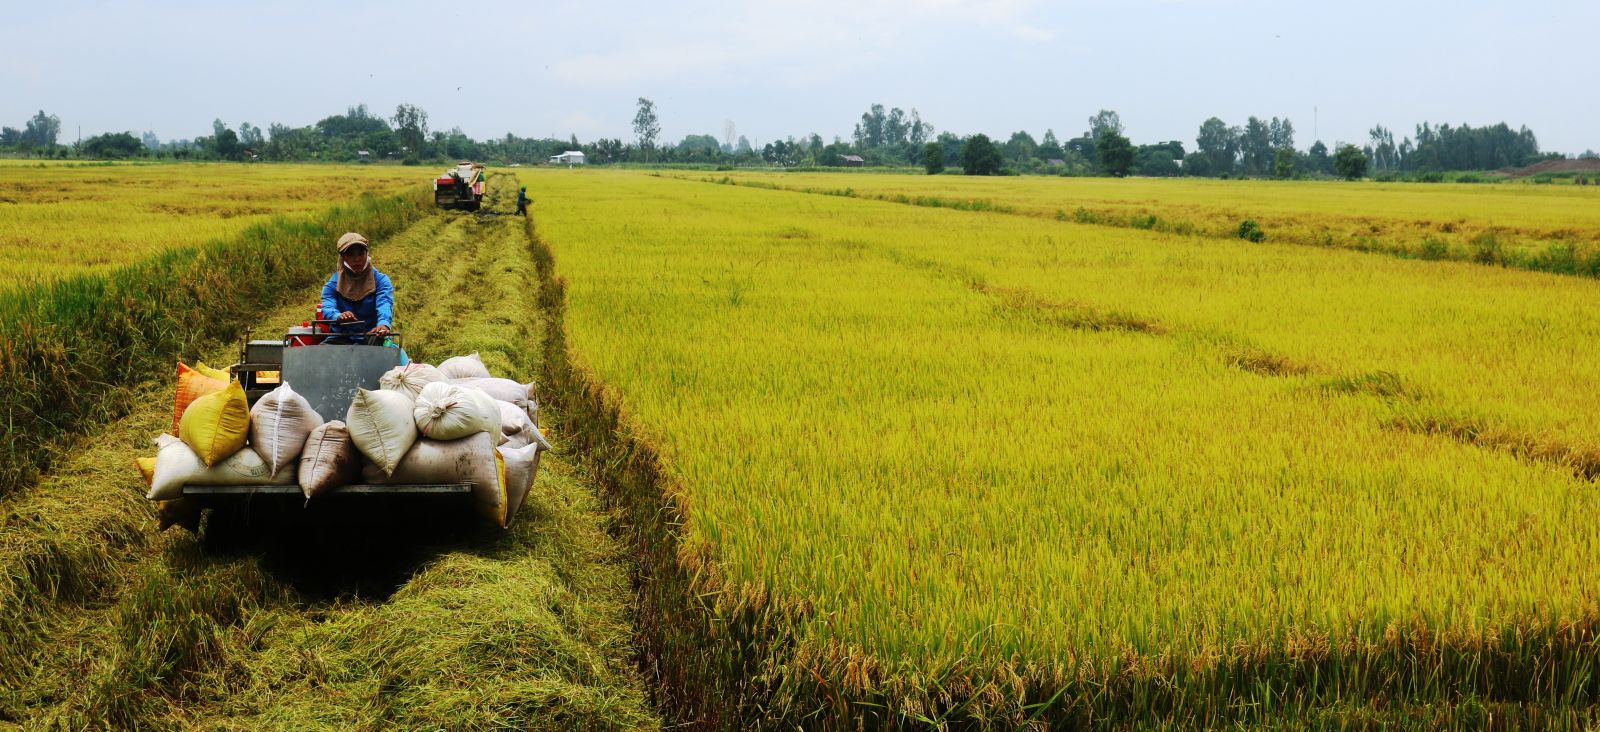 Nâng giá trị sản xuất các loại lúa gạo ngon, chất lượng cao ở ĐBSCL - Ảnh 1.